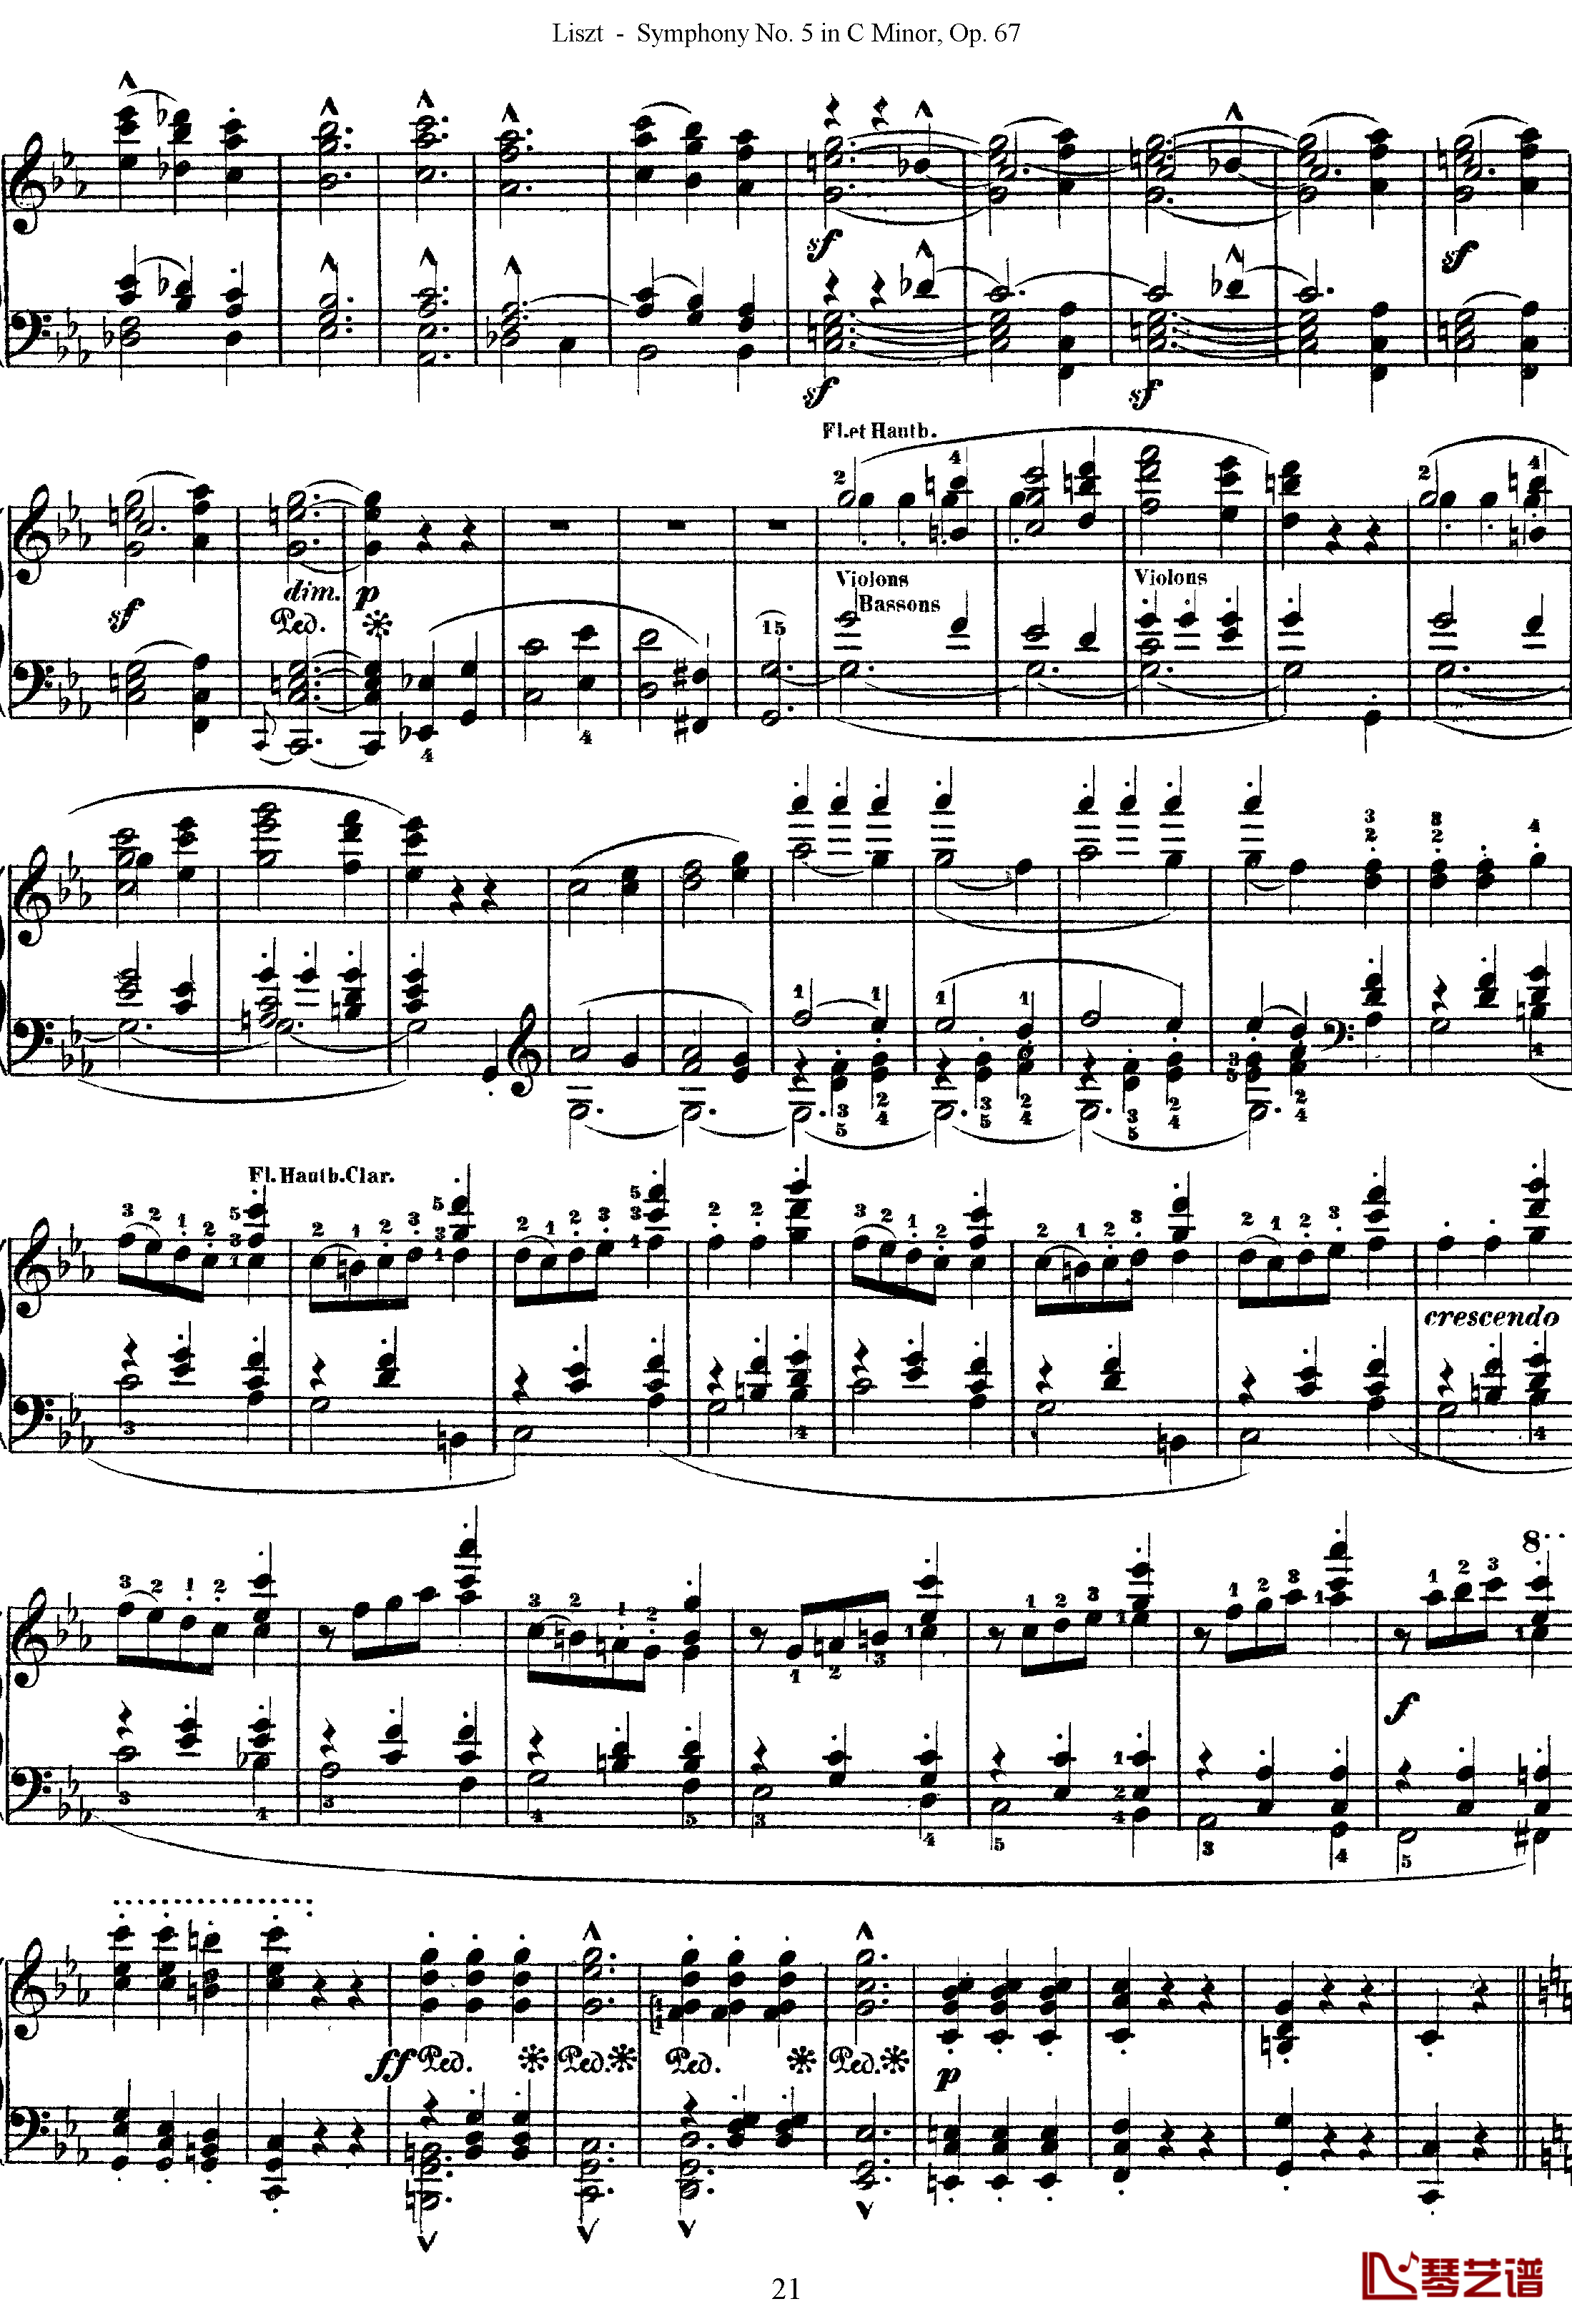 第五交响乐的钢琴曲钢琴谱-李斯特-李斯特改编自贝多芬21